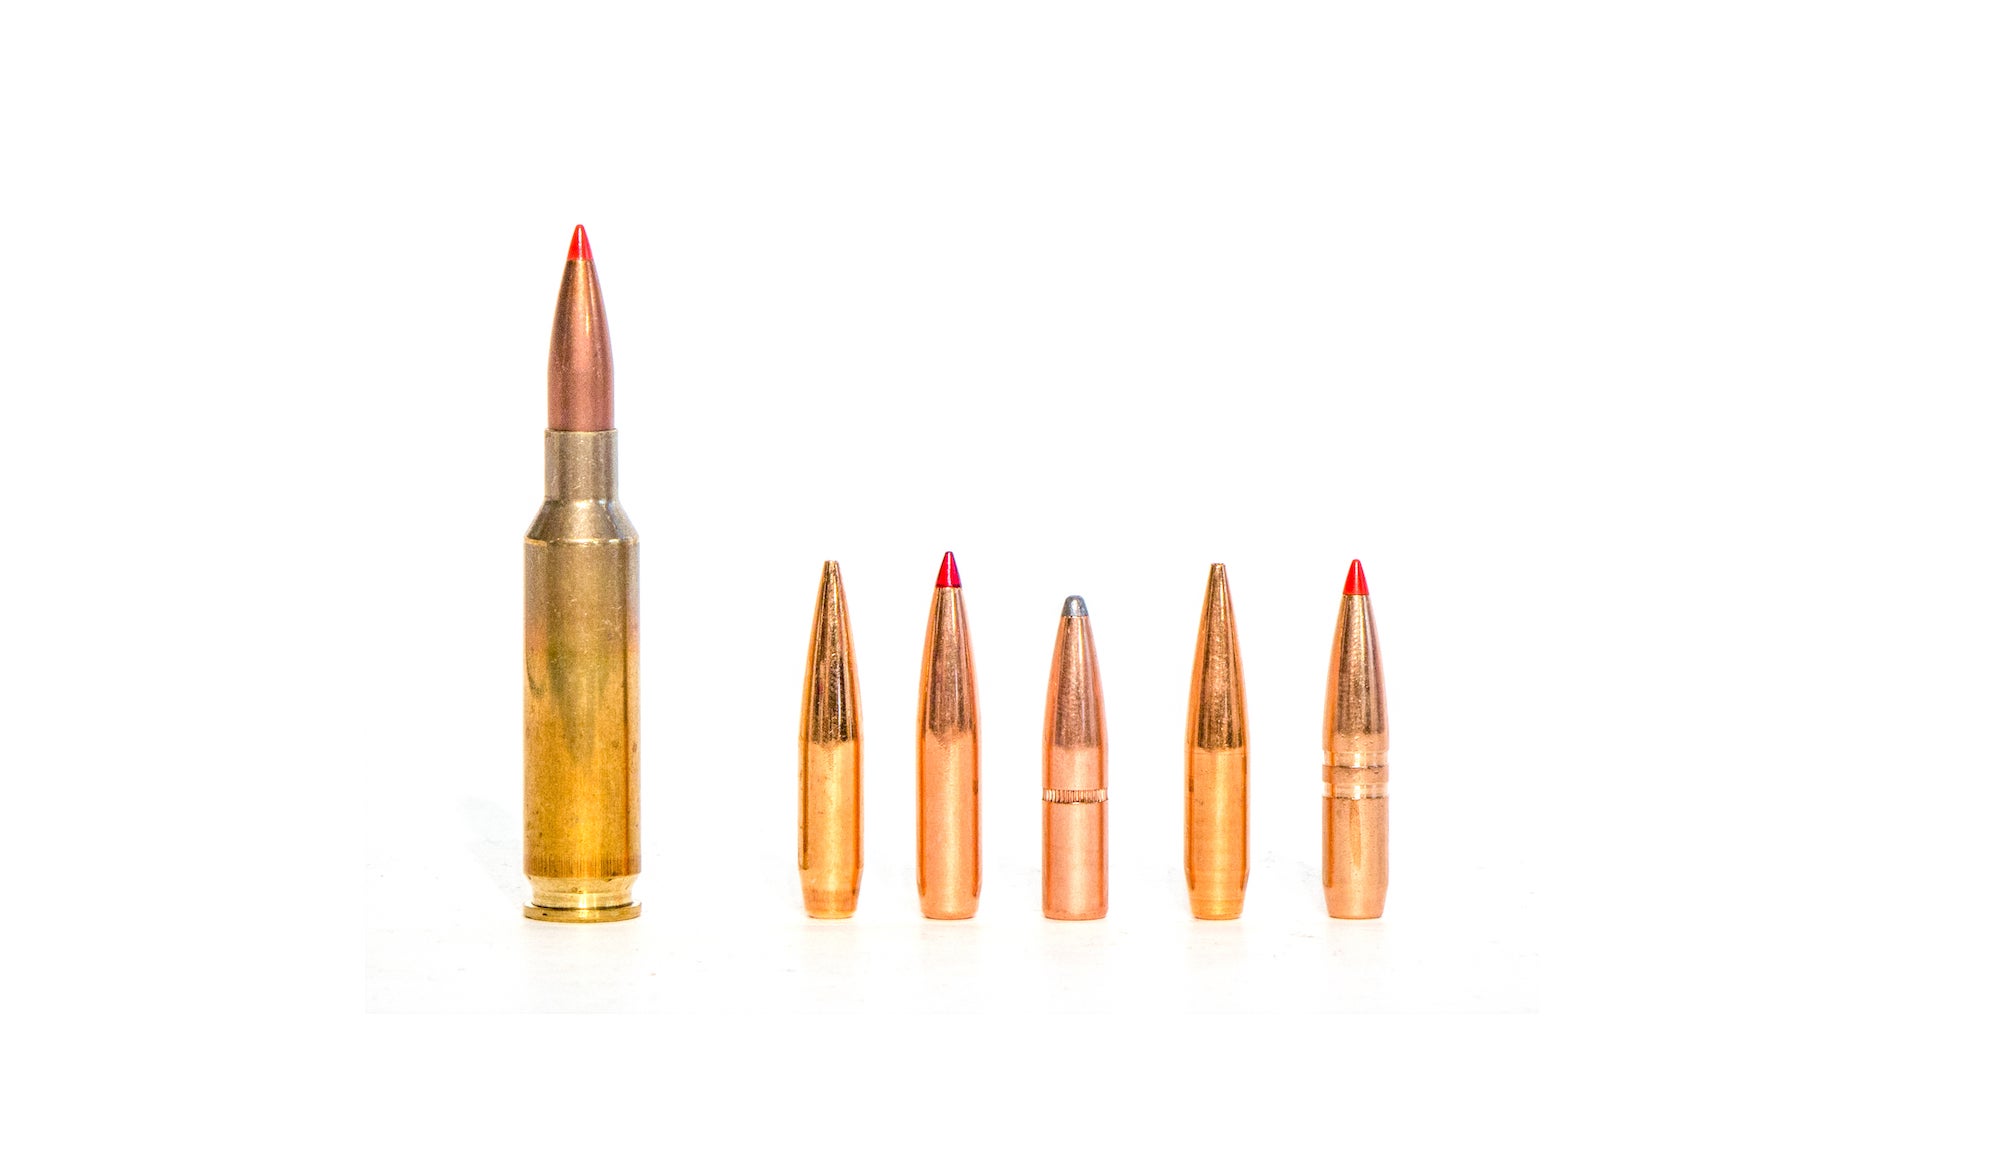 6.5 Creedmoor cartridge next to bullets.